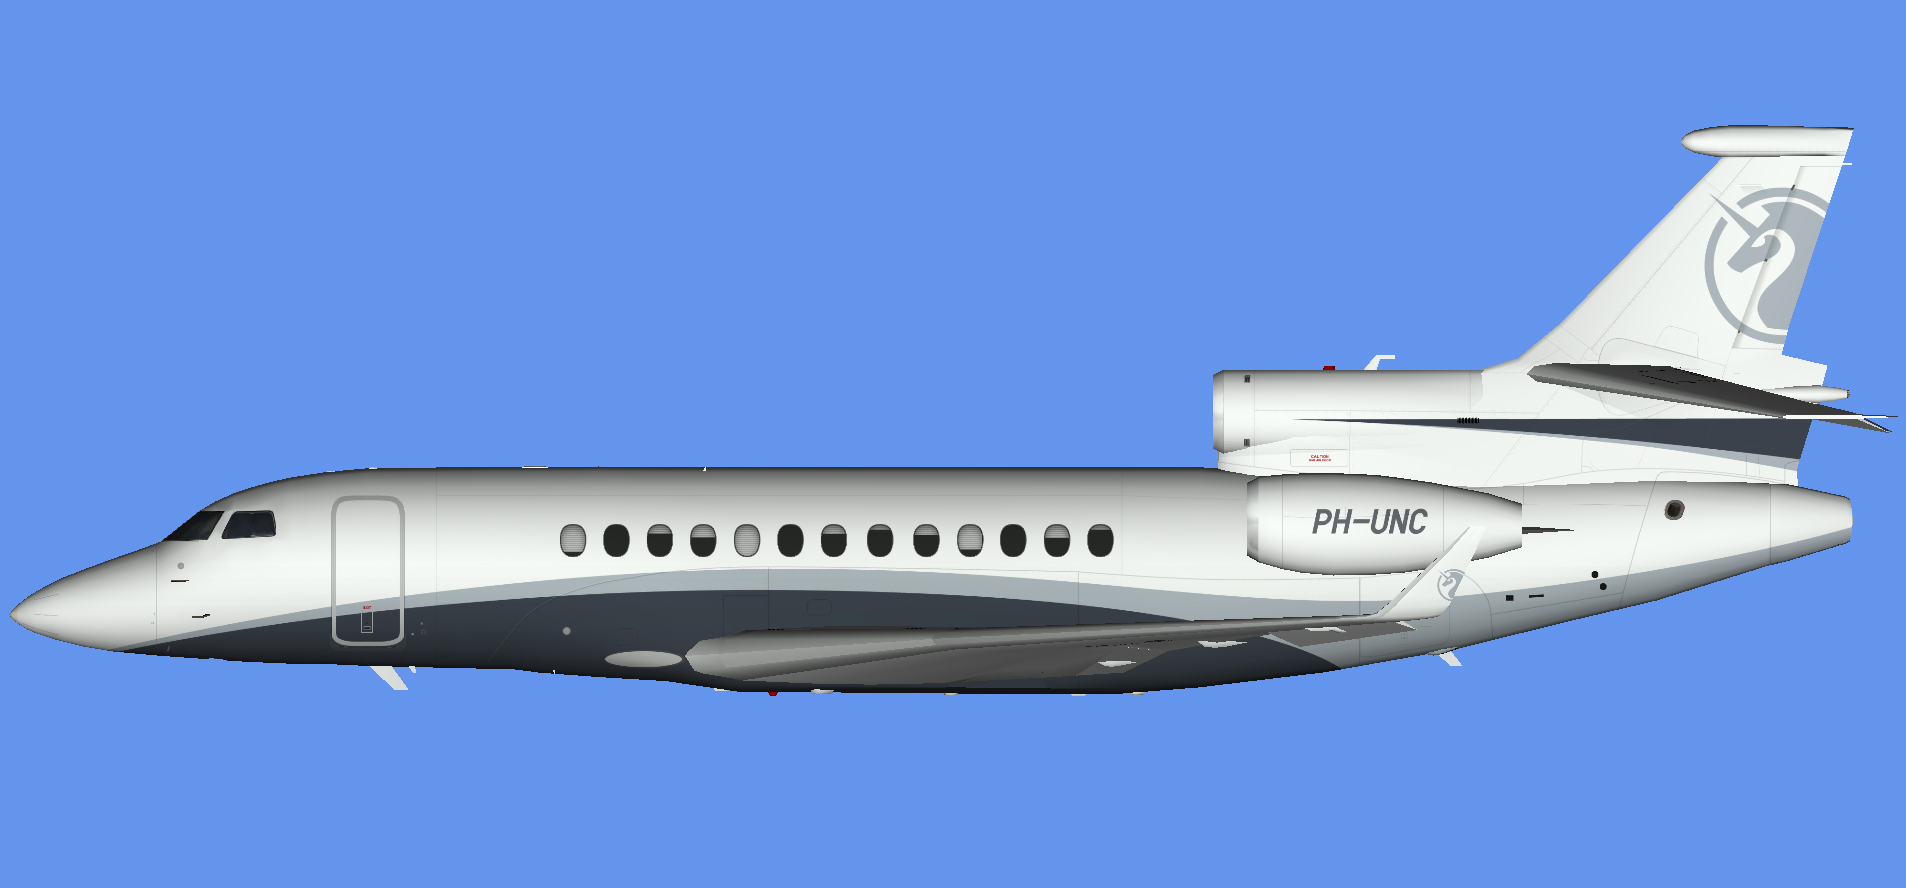 Dassault Falcon 7x PH-UNC